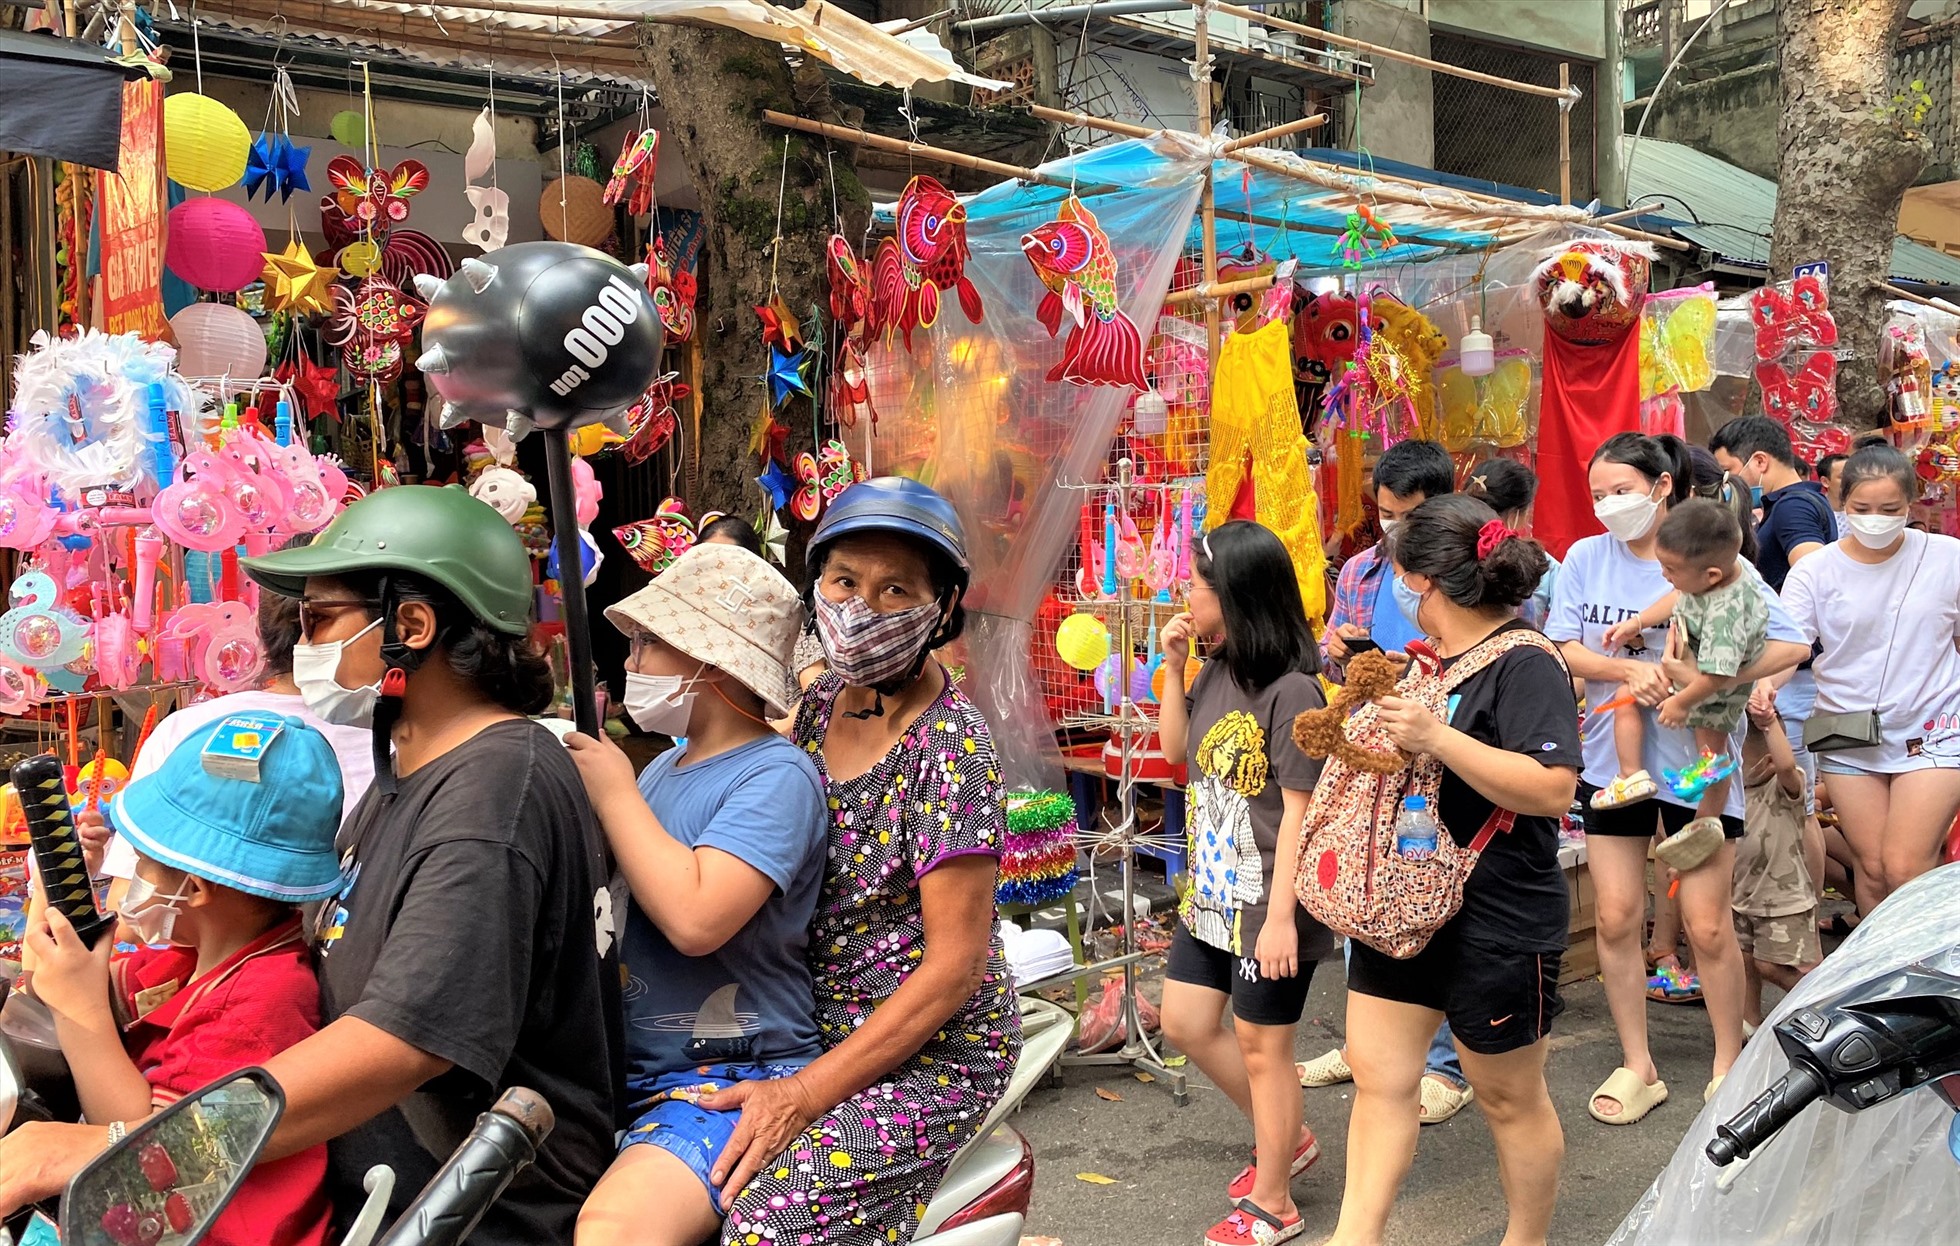 Còn ghi nhận tại phố Hàng Mã vào chiều 1.9, thời tiết nắng ráo, hàng nghìn người đã có mặt để vui chơi khiến con phố ách tắc cục bộ.